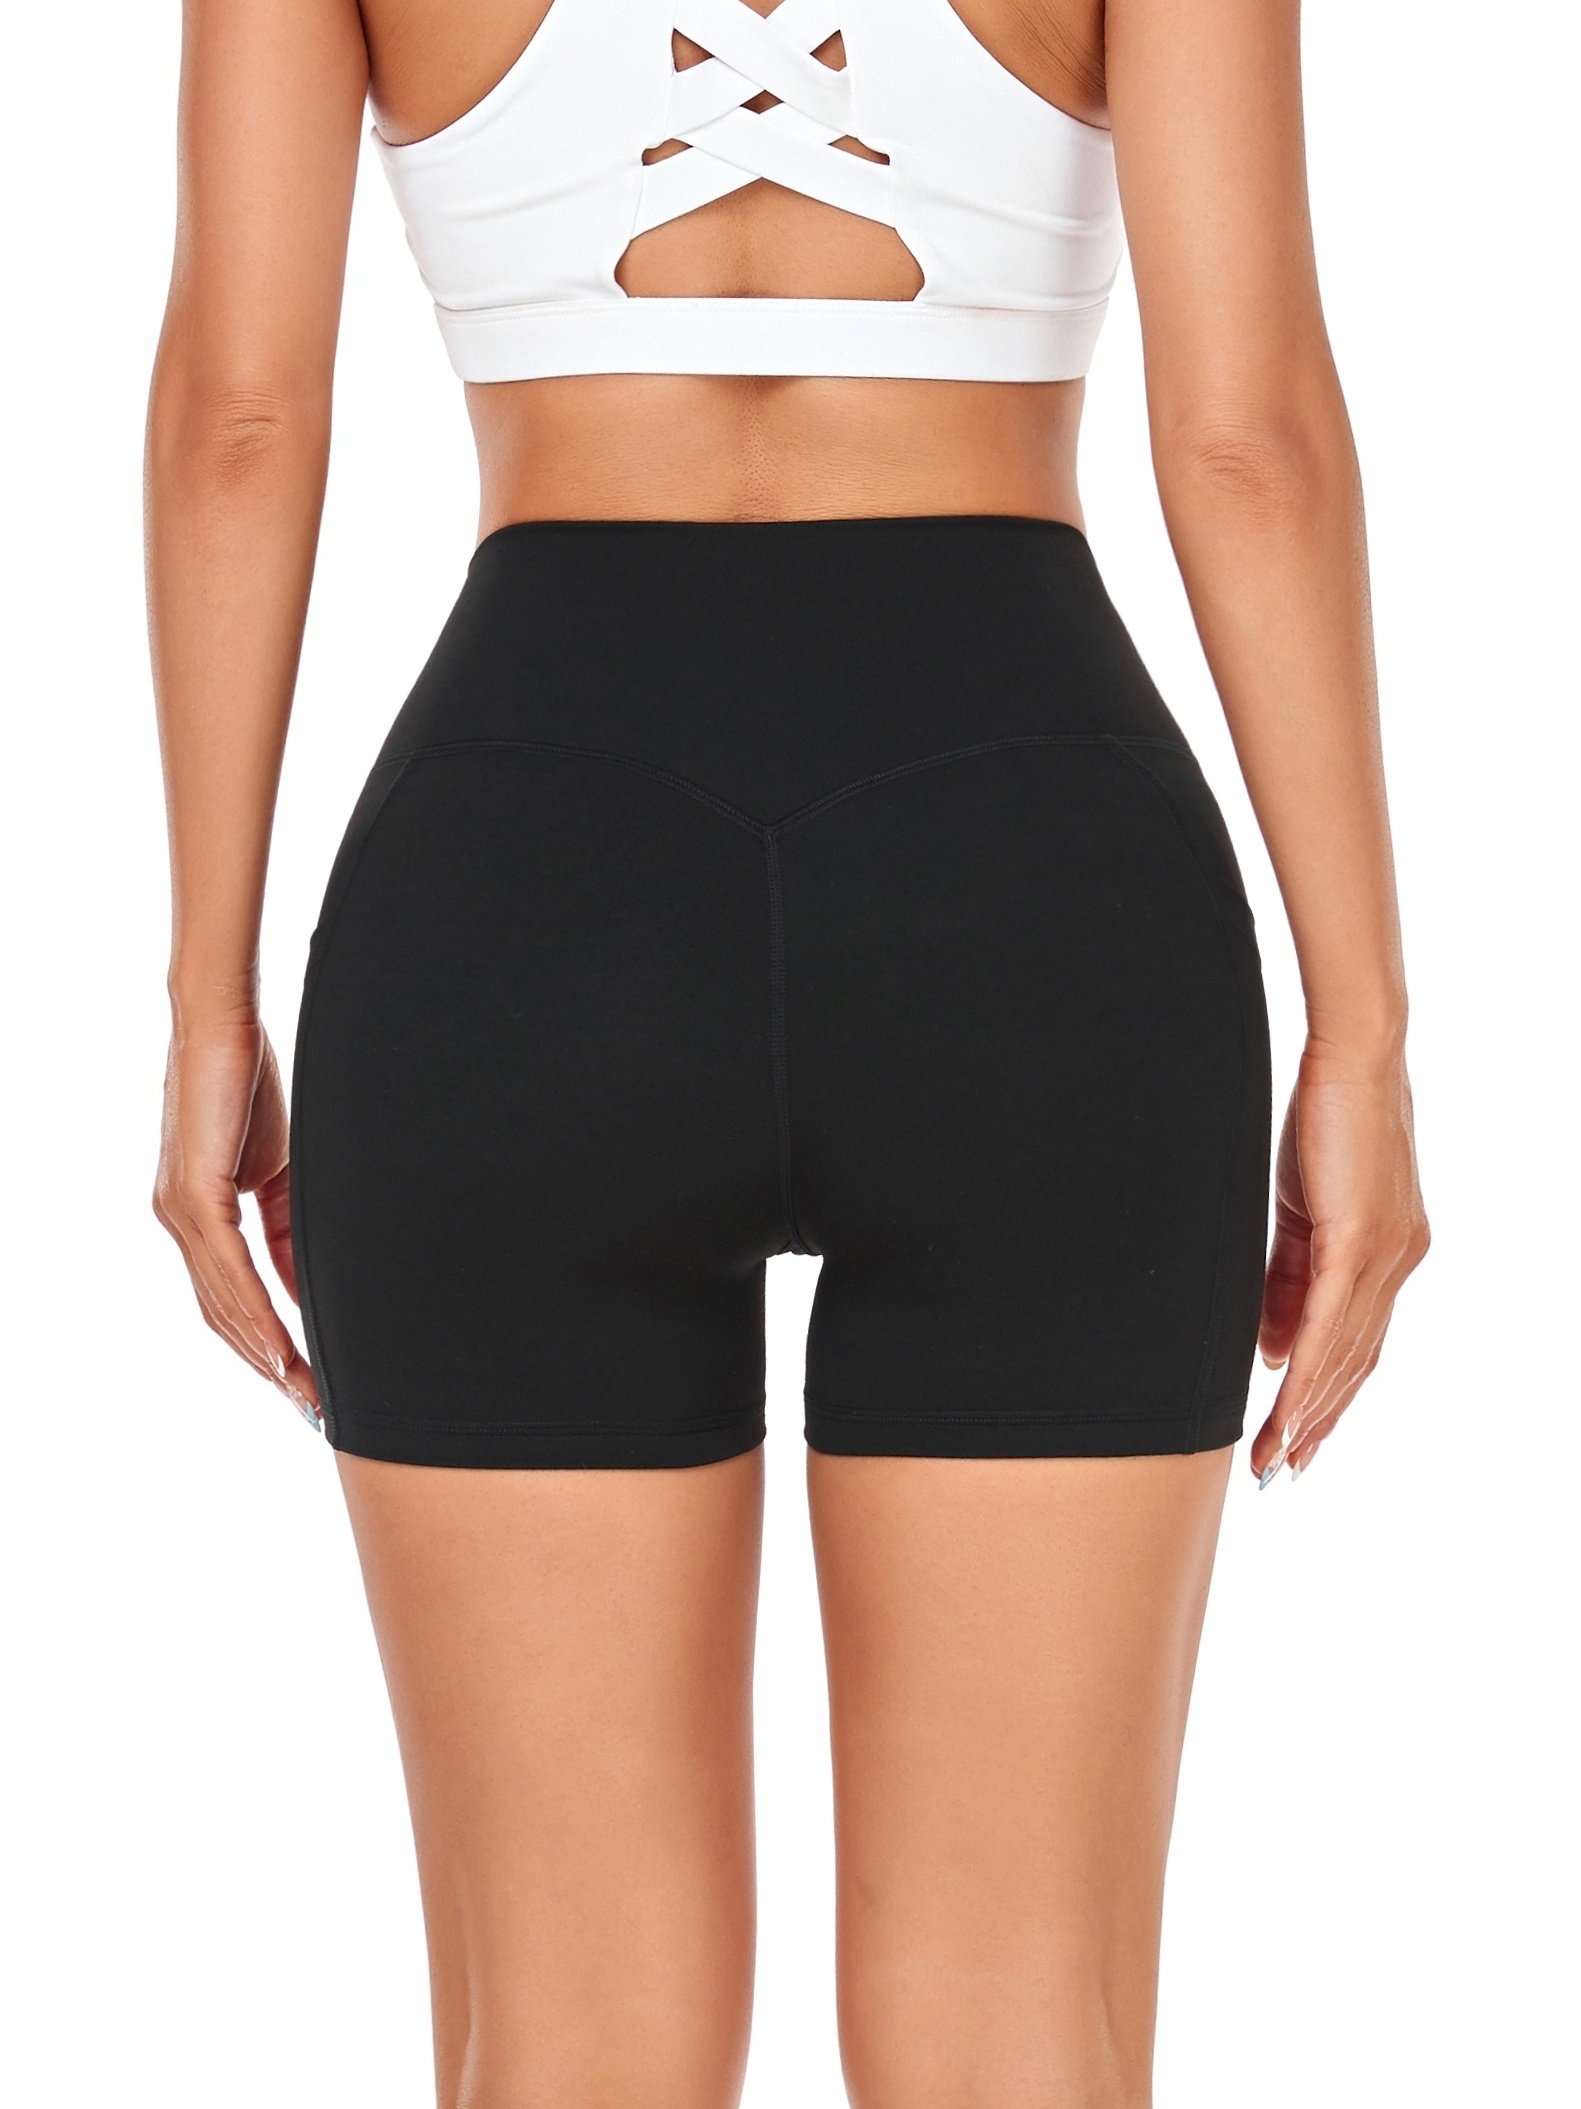 cross waist sweat absorbing yoga biker shorts high waist solid sport shorts with pocket womens activewear